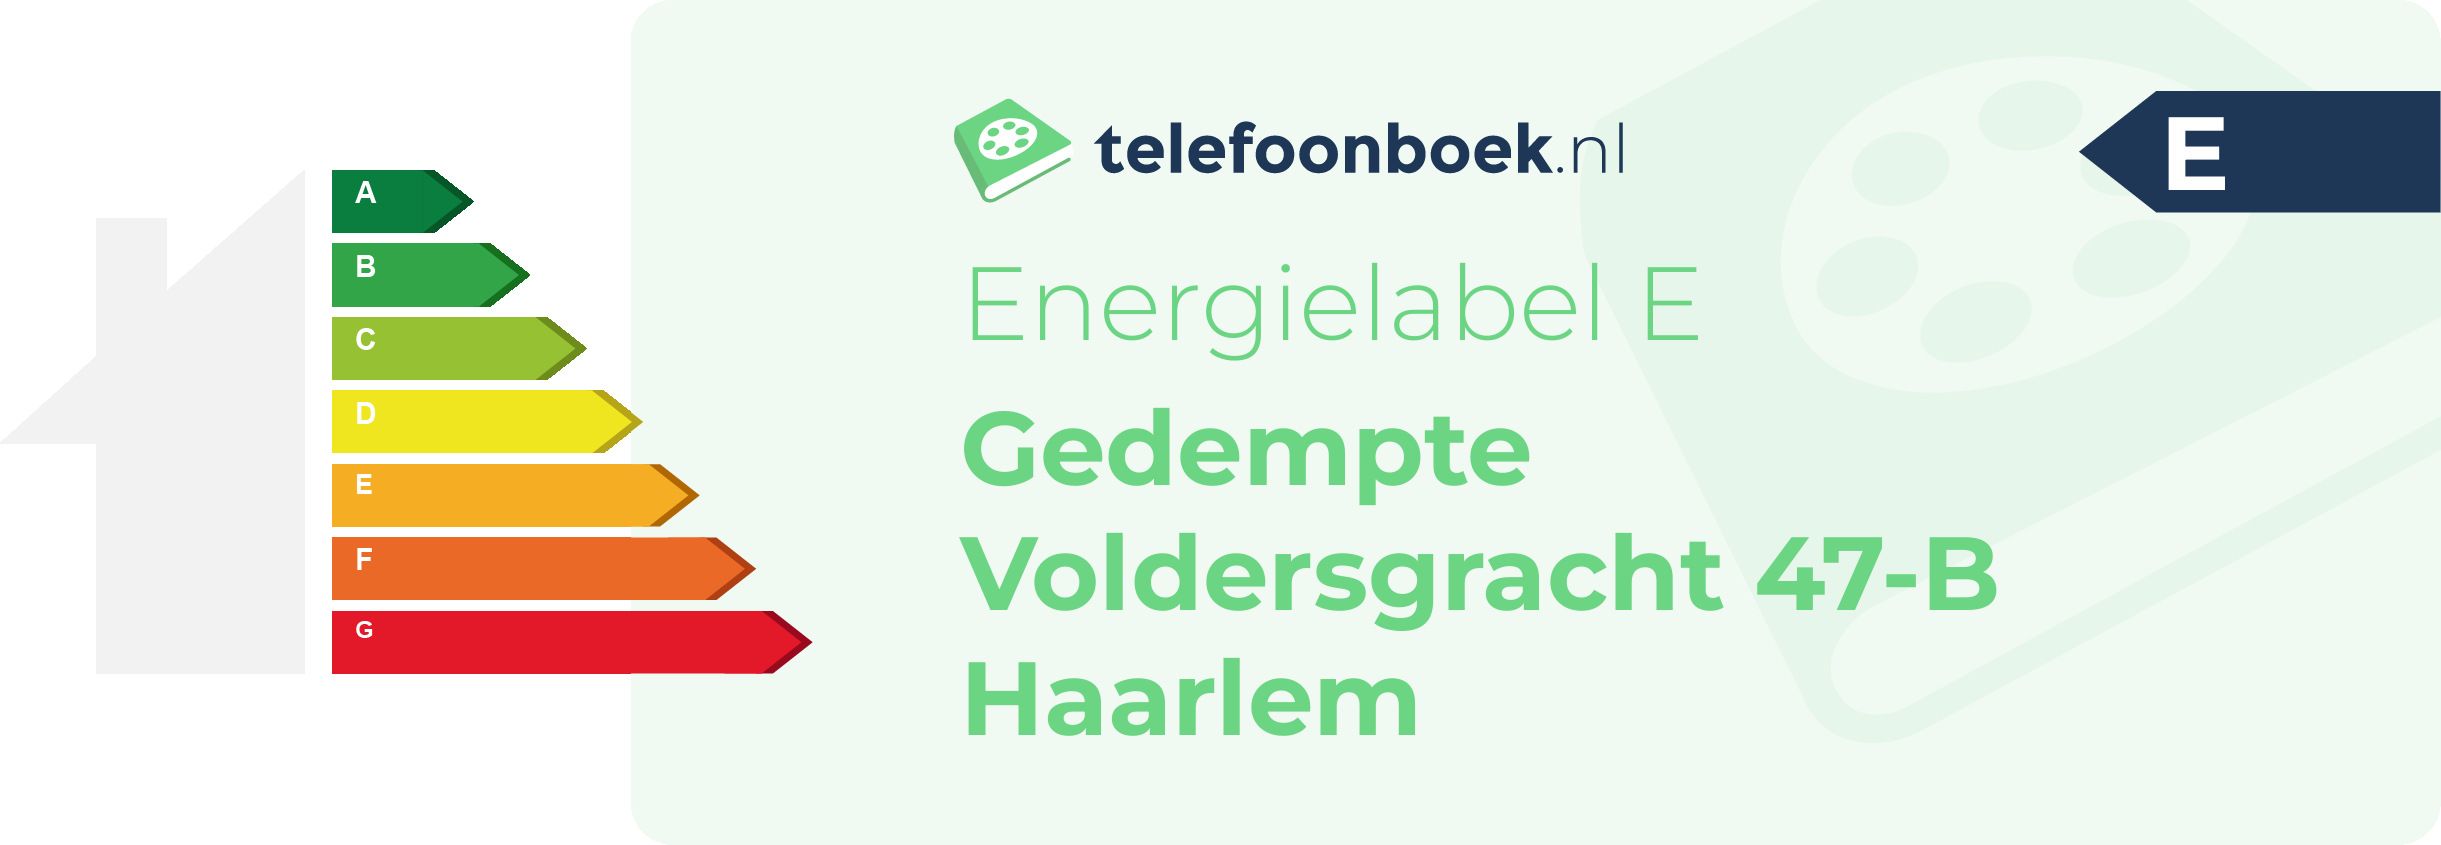 Energielabel Gedempte Voldersgracht 47-B Haarlem